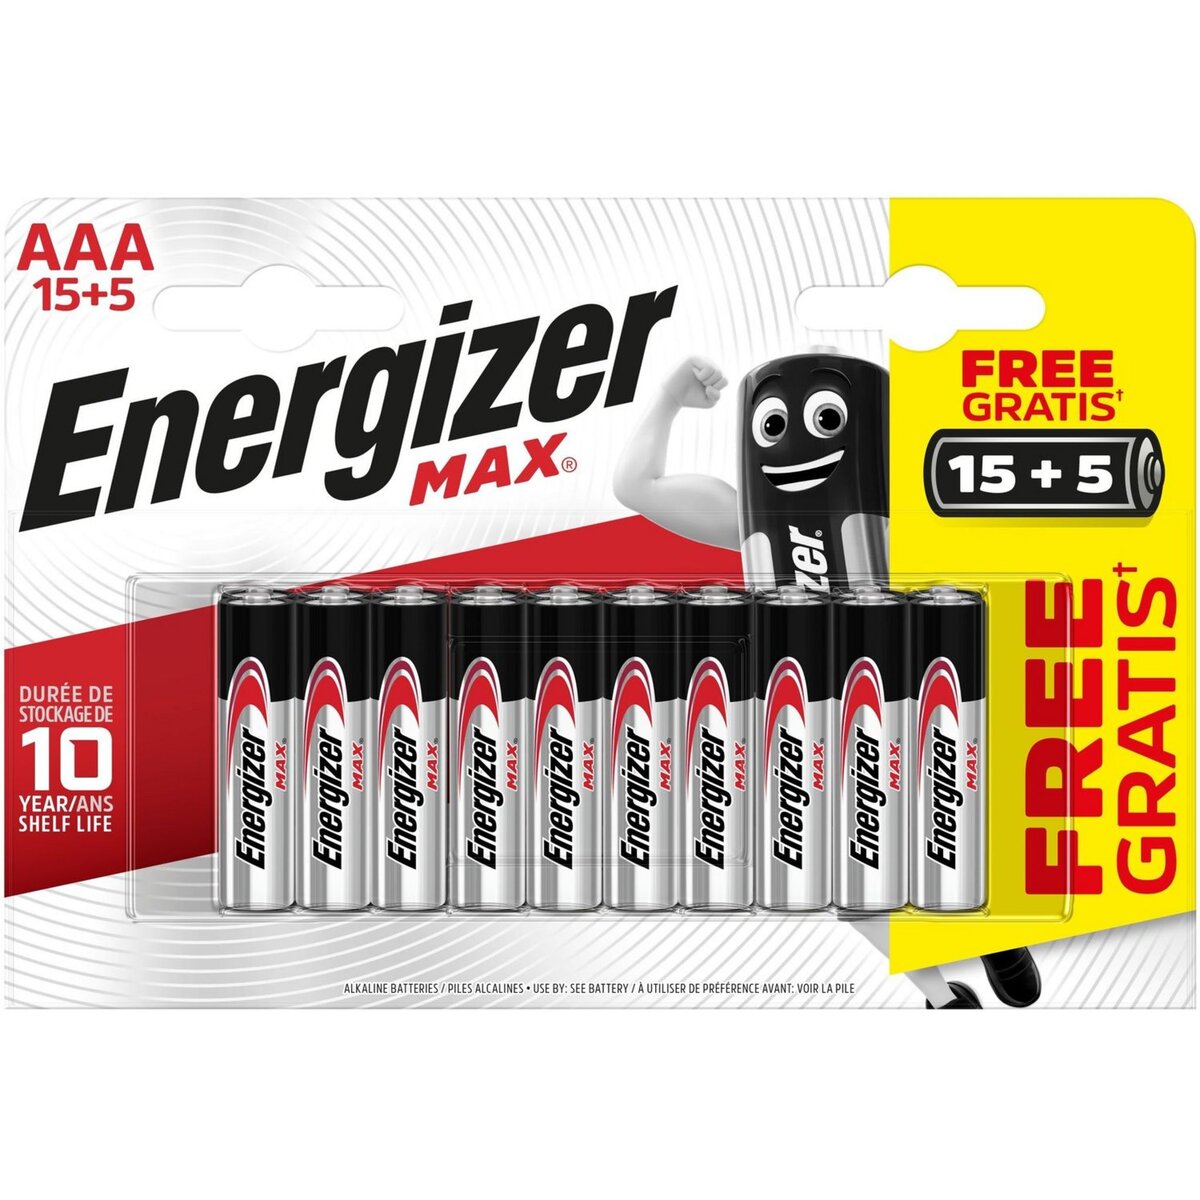 Piles, emballage régulier, max AAA-2 – Energizer : Pile et